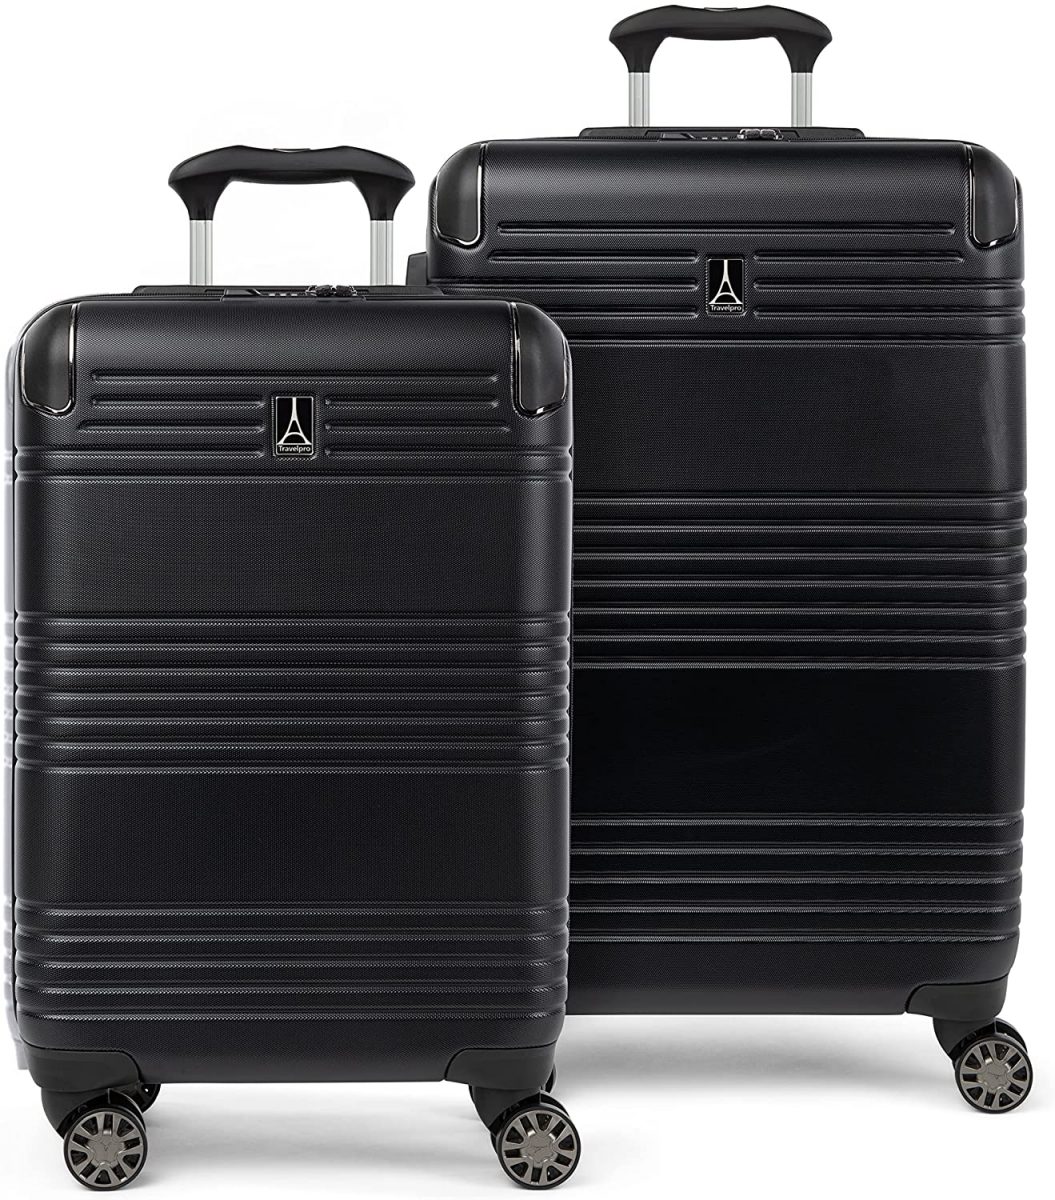 Travelpro Roundtrip Hardside Expandable Luggage Set